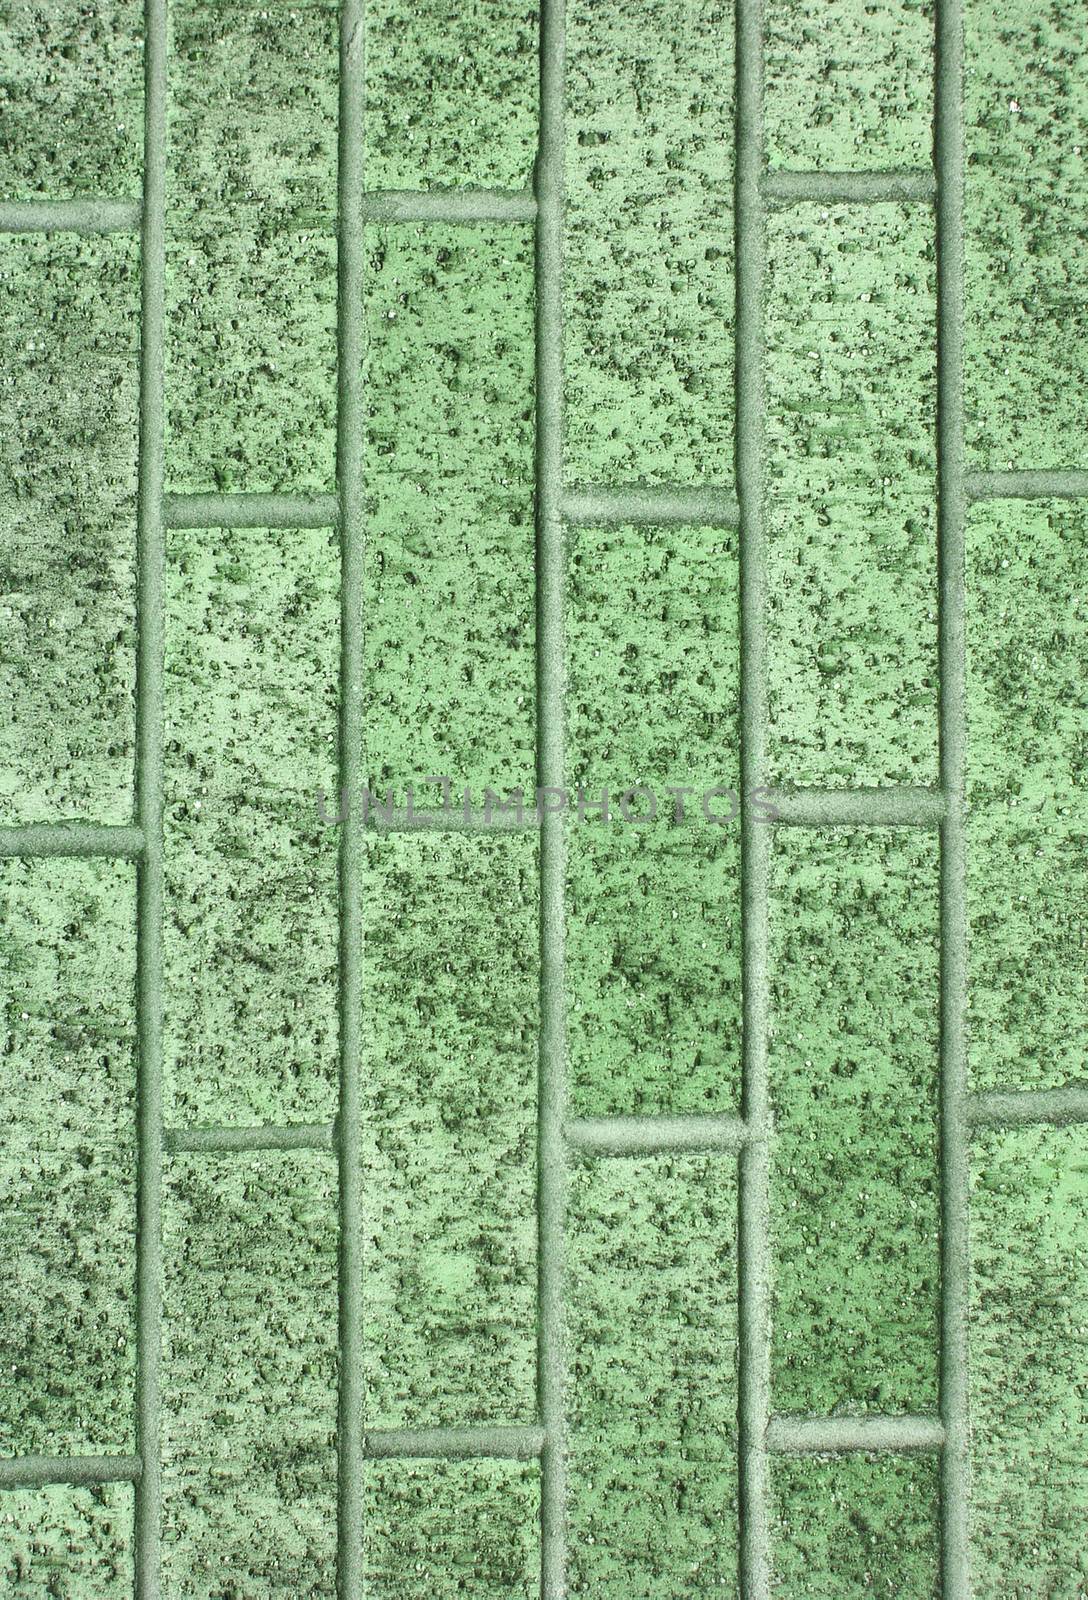 Green brick wall